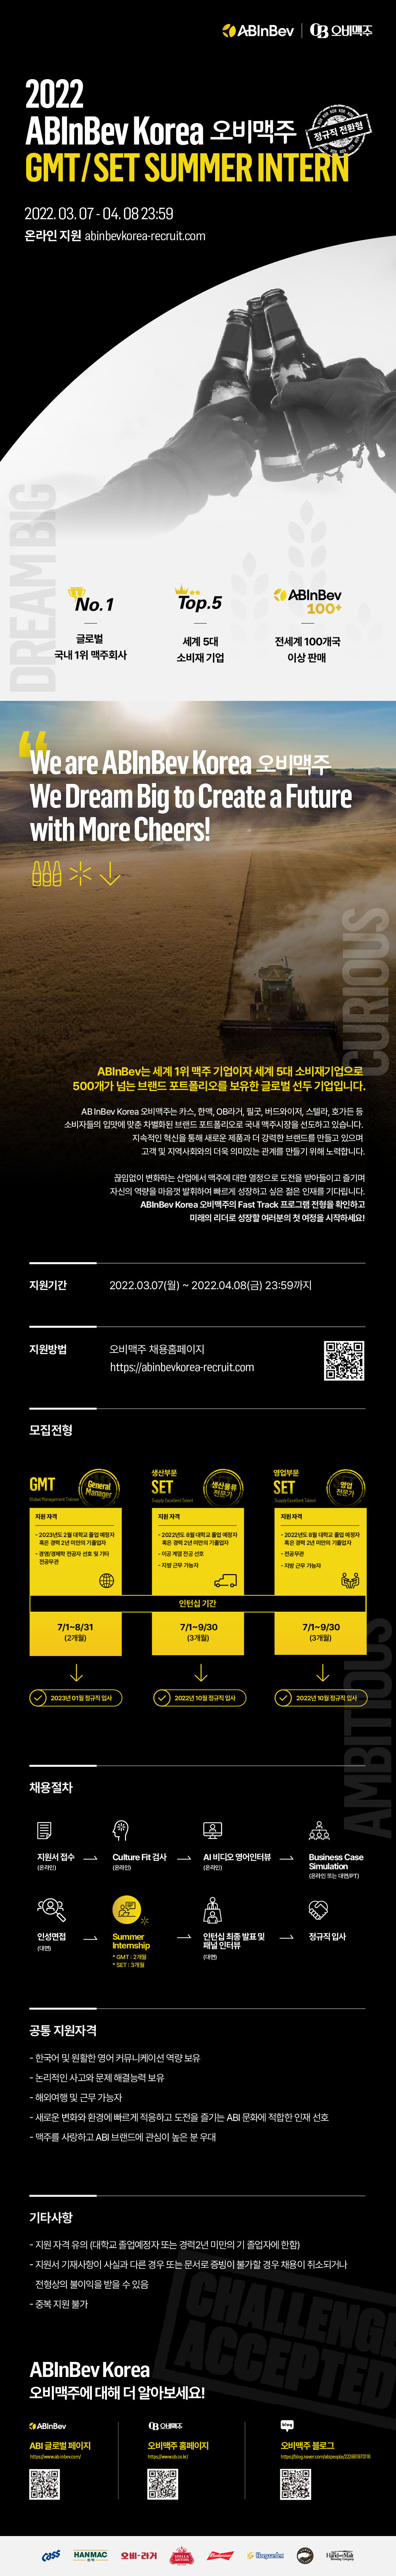 [오비맥주] 2022년 ABInBev Korea GMT/SET SUMMER INTERN (~4월 8일까지)